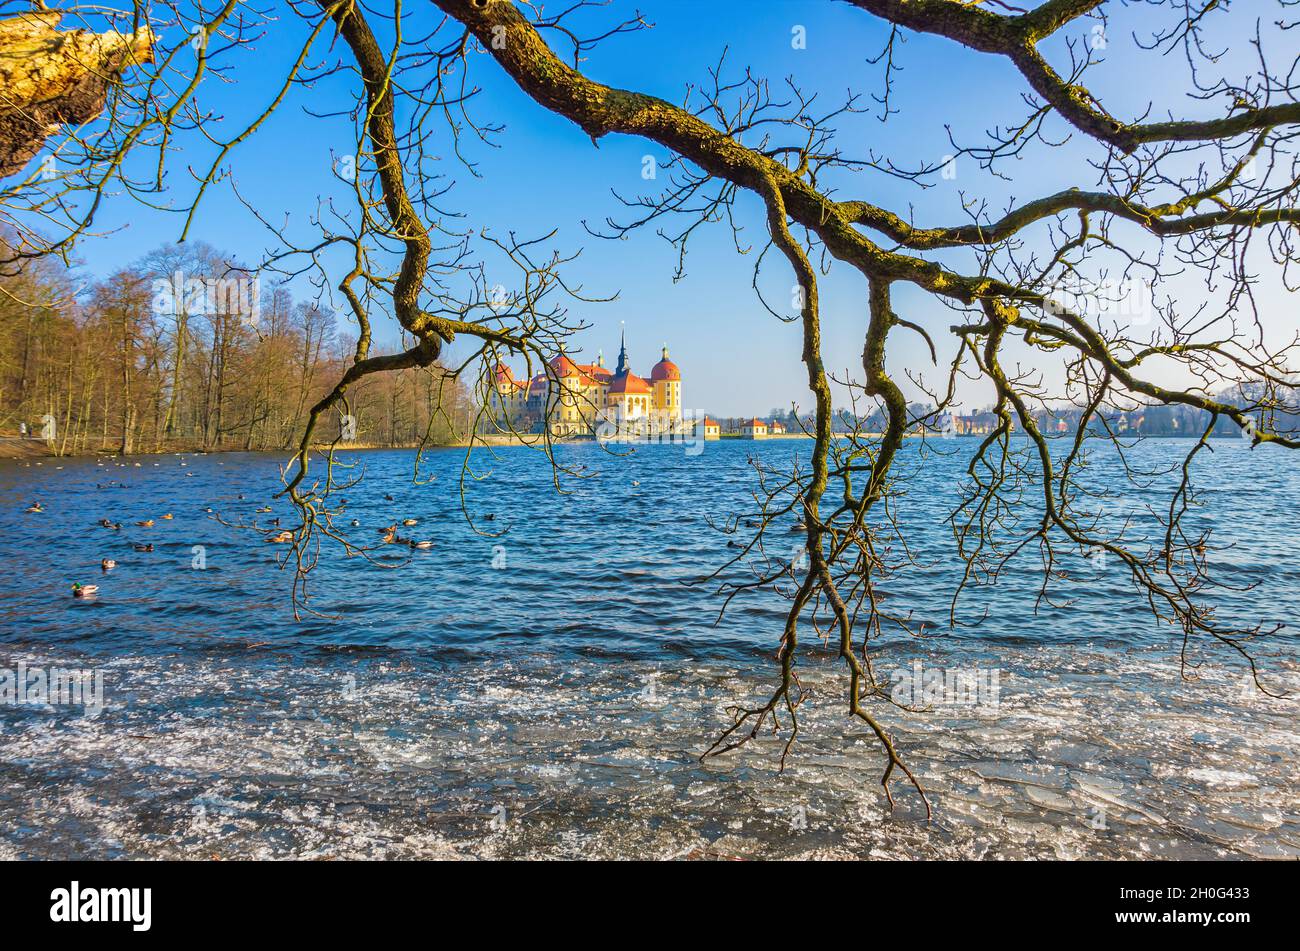 Moritzburg bei Dresden, Sachsen, Deutschland: Winterlich Schloss Moritzburg, umgeben von dem teilweise gefrorenen Schlossteich, der mit Eisschollen bedeckt ist. Stockfoto